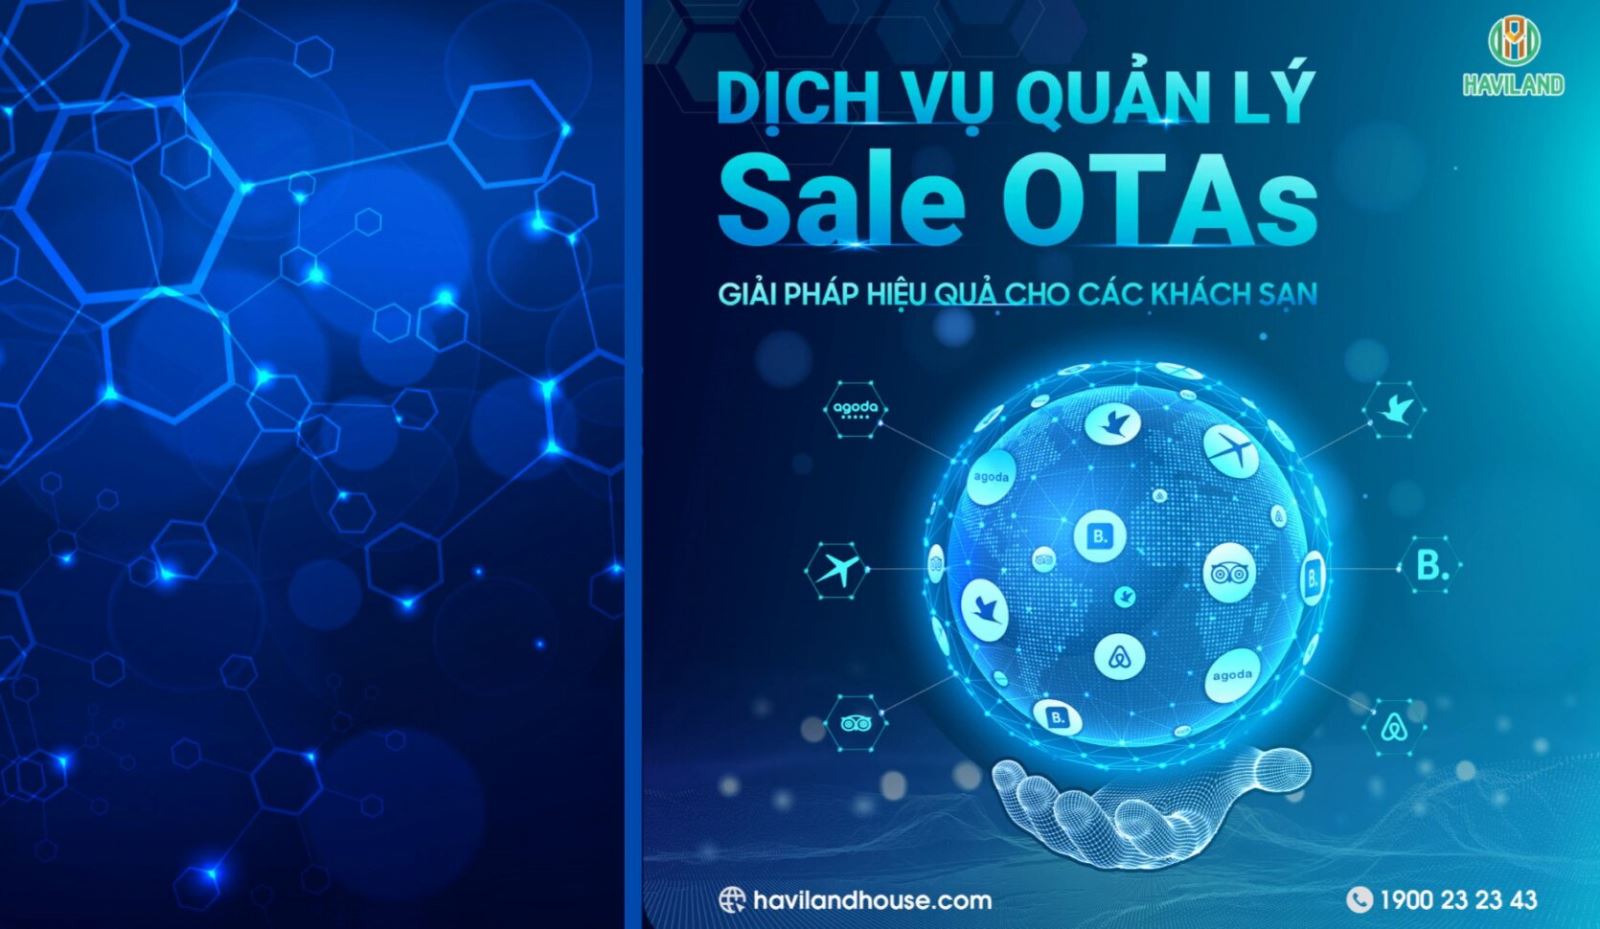 Sale OTA - Bí kíp gia tăng 79% doanh thu bán hàng ngành khách sạn